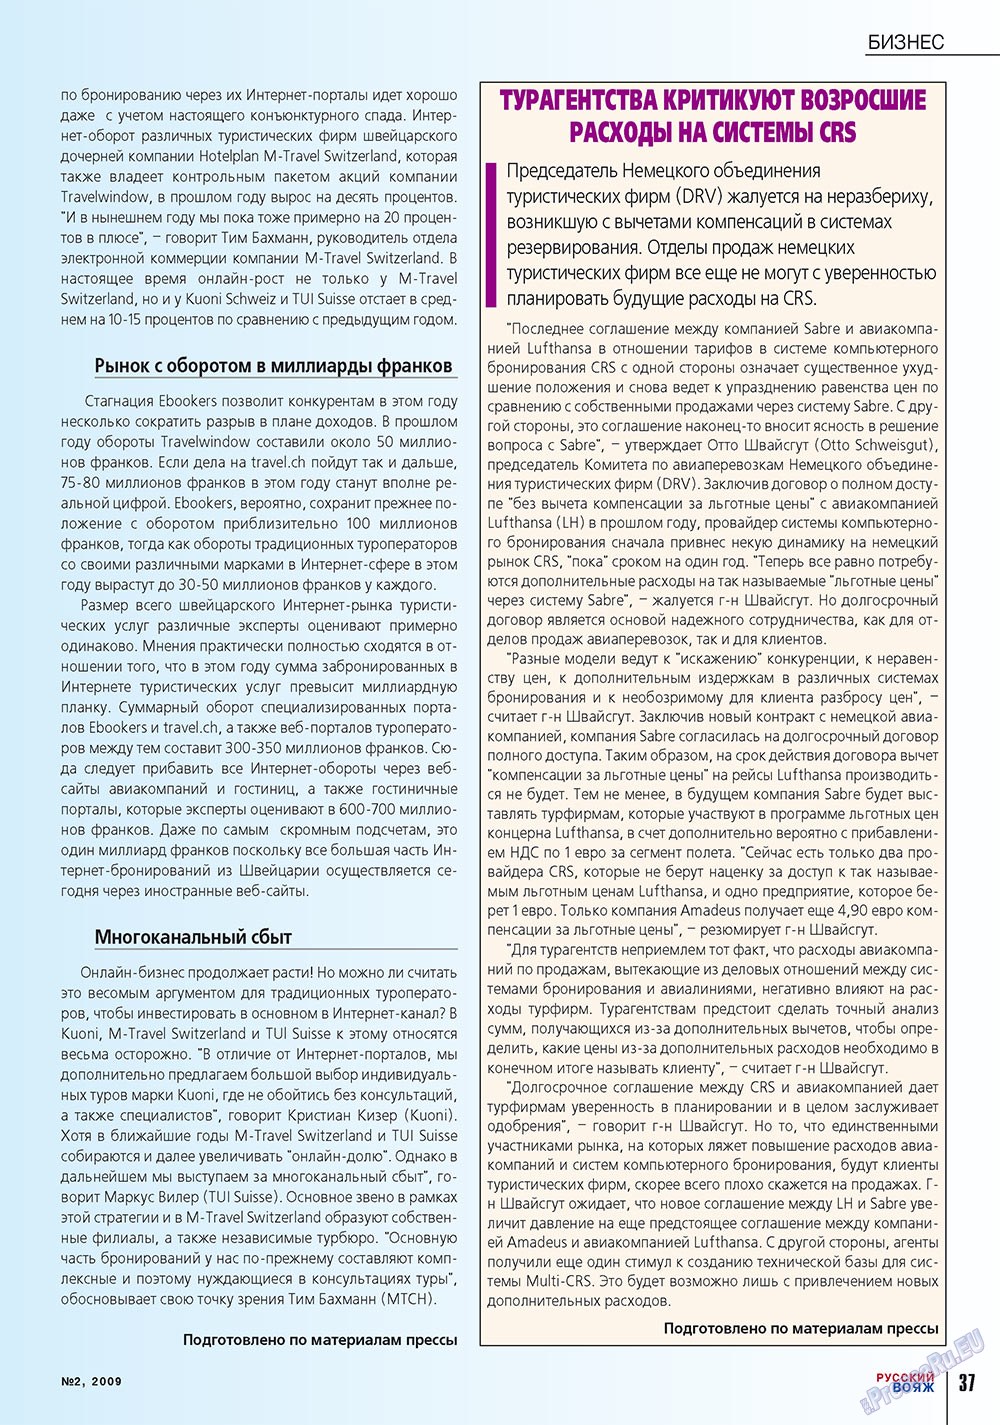 Русский вояж (журнал). 2009 год, номер 2, стр. 37